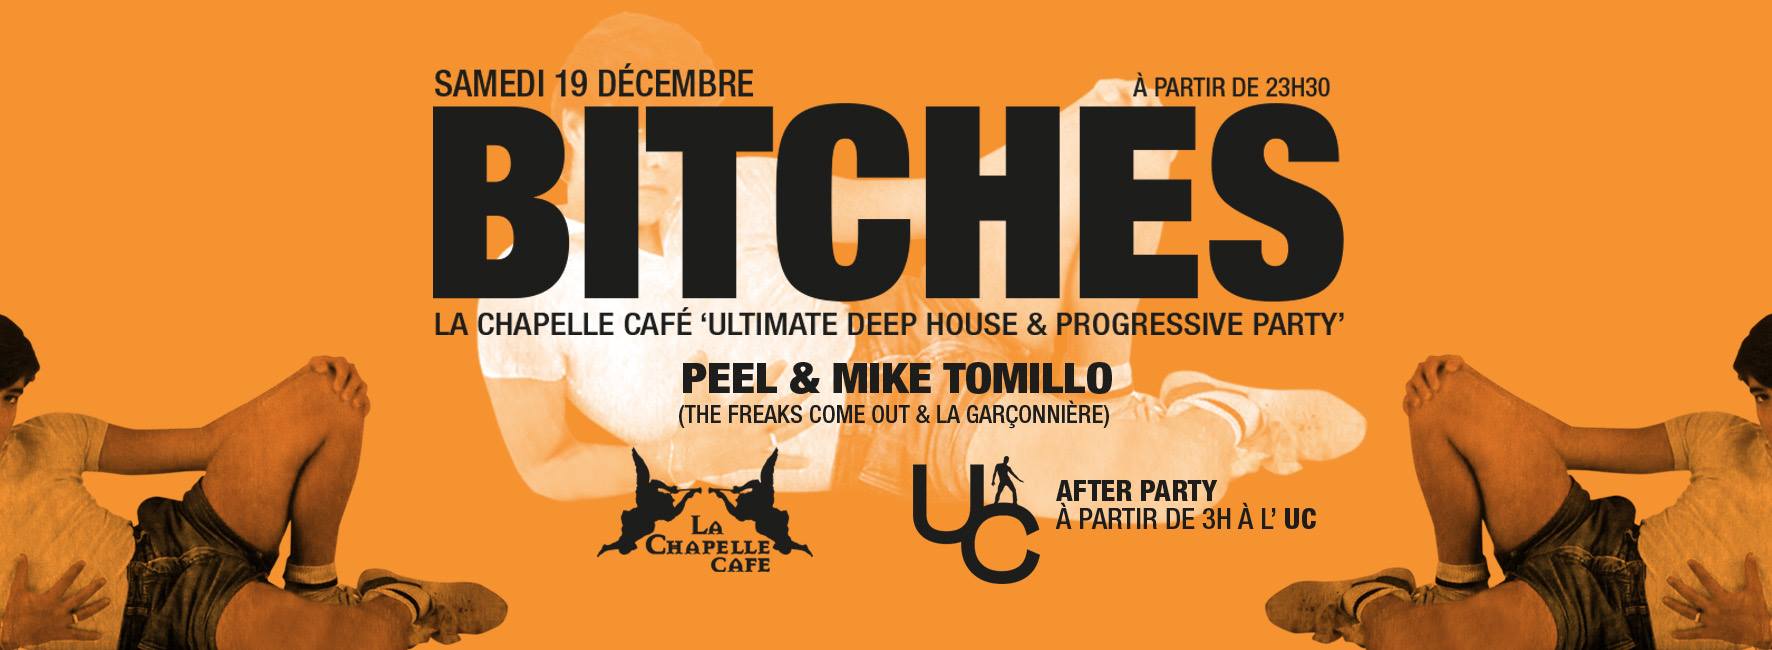 la-chapelle-café-bar-gay-friendly-lyon-heteroclite-bitches-la garçonniere mike tomillo peel samedi 19 decembre 2015